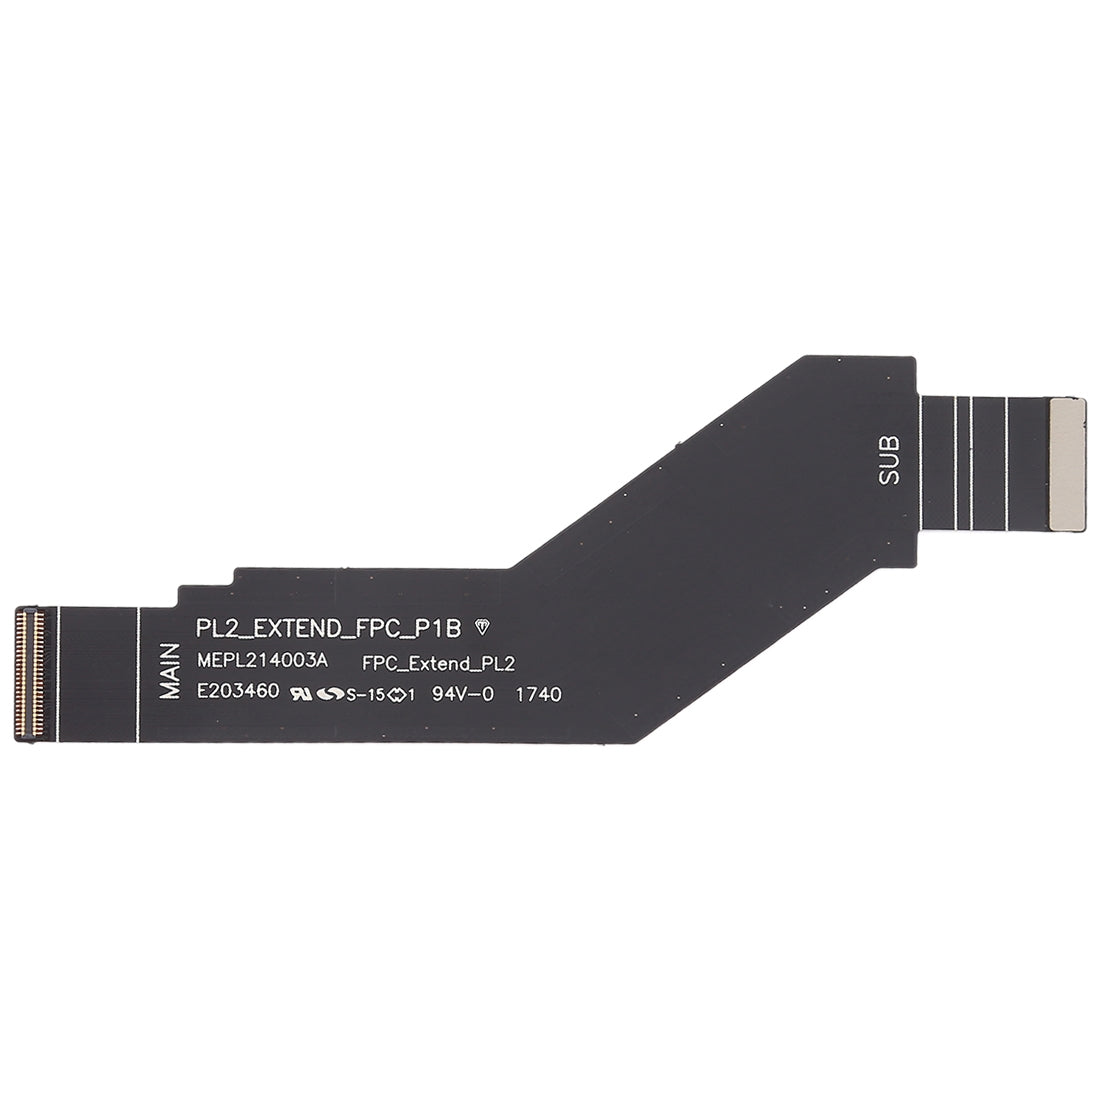 Board Connector Flex Cable Nokia 6 2018 6.1 SCTA-1043 TA-1045 TA-1050 TA-1054